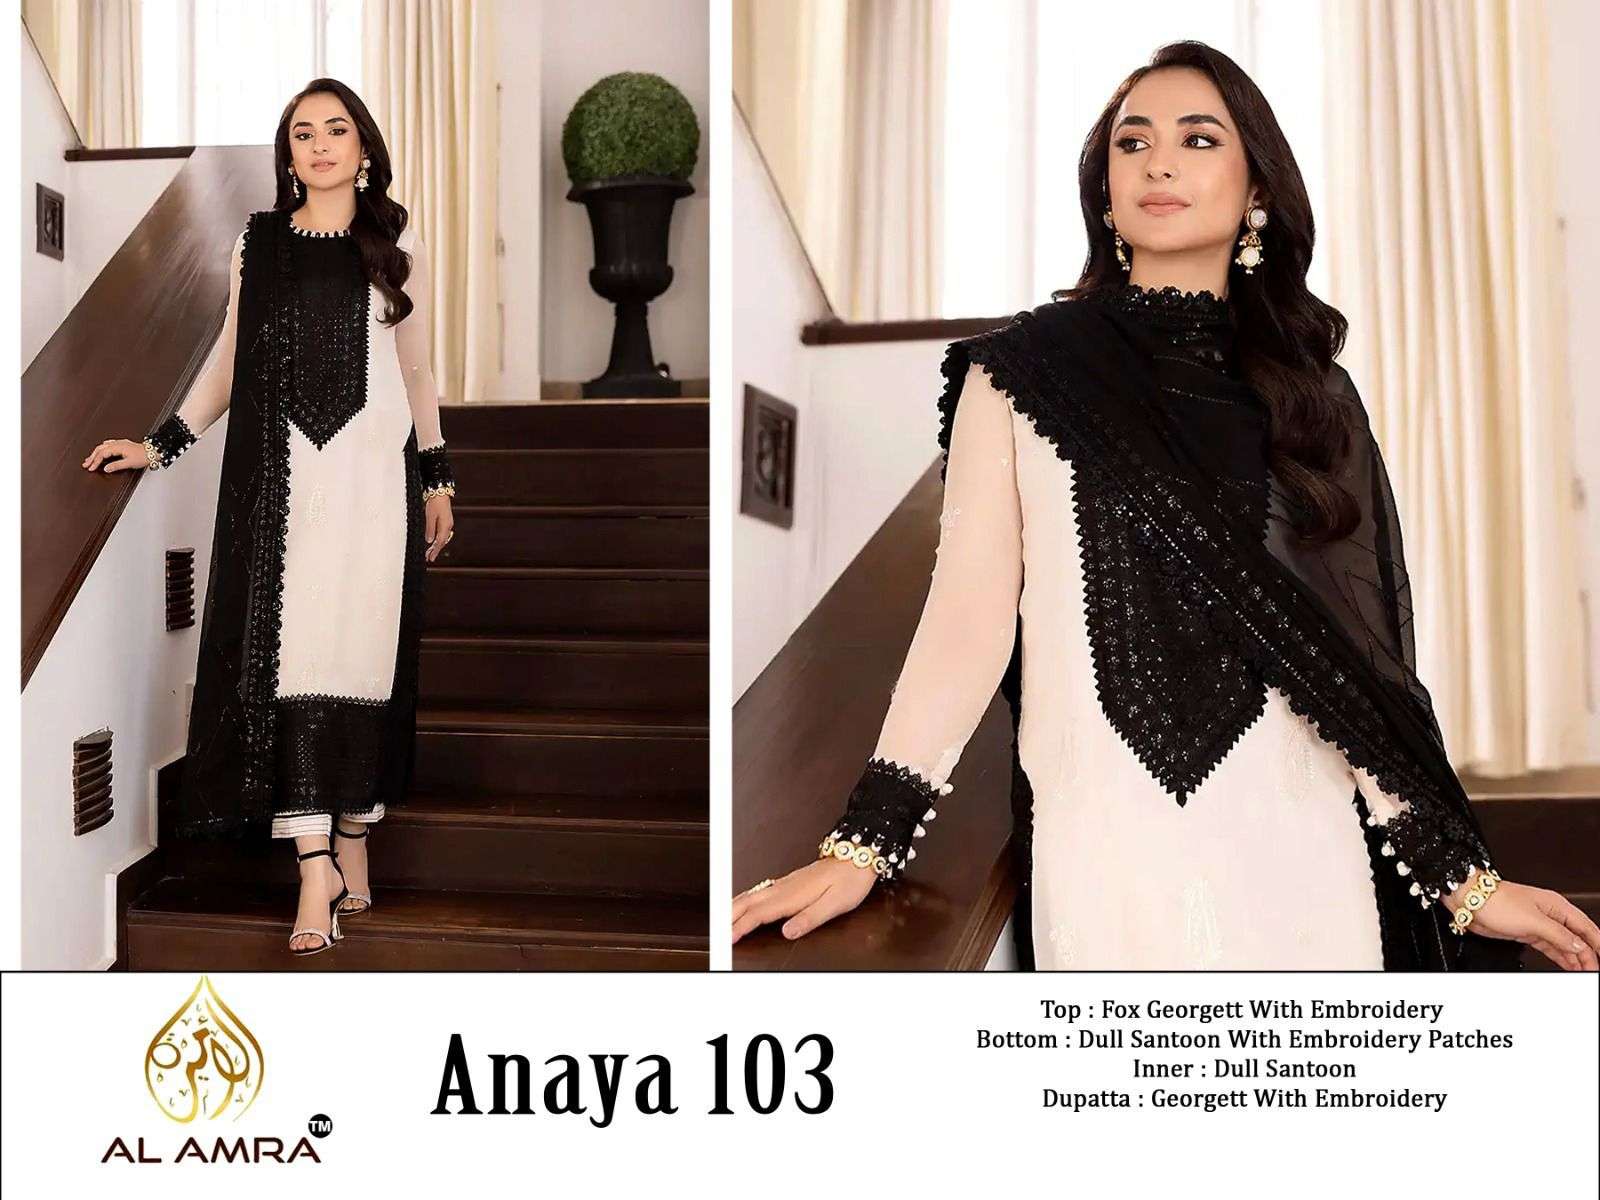 Al Amra 103 Anaya White Semi Stitched Georgette Embroidery Pakistani Dress